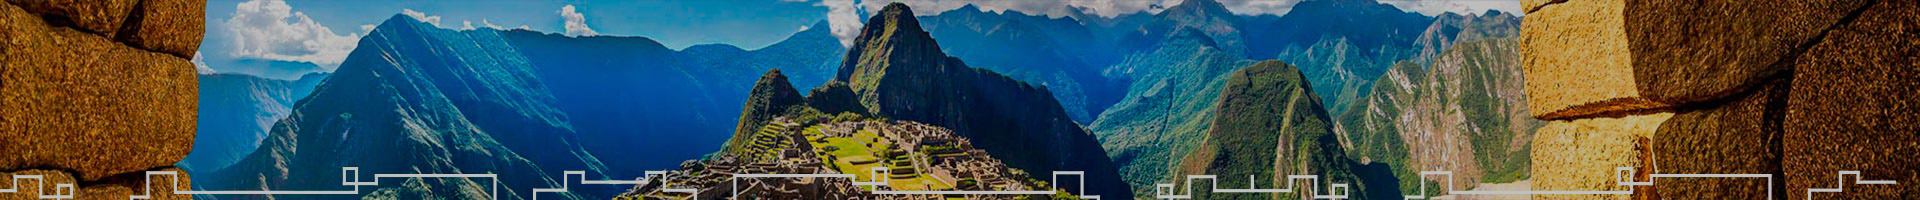  Inca Jungle Coffee Trail towards Machu Picchu 2D